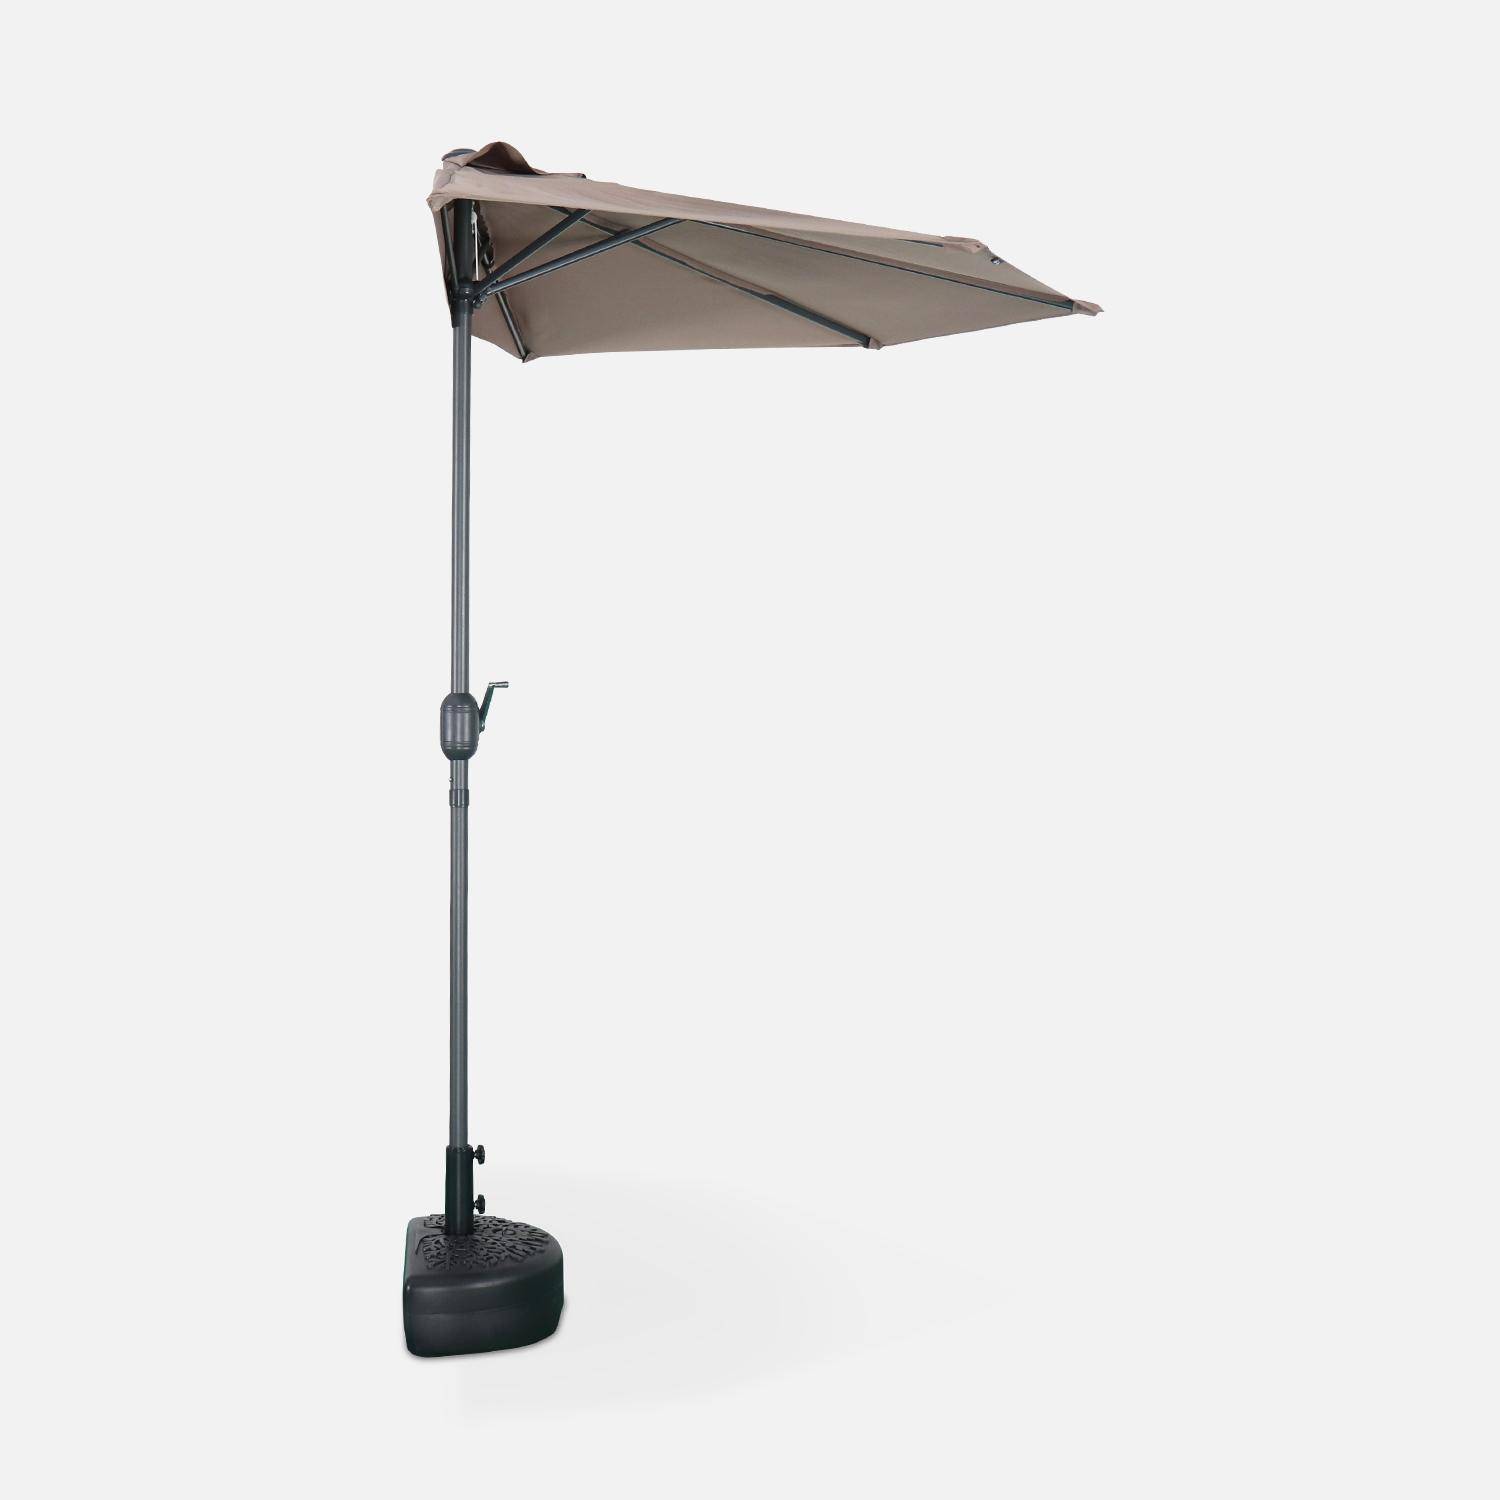  Parasol para balcón Ø250cm  – CALVI – Pequeño parasol recto, mástil en aluminio con manivela, tela color pardo ,sweeek,Photo4